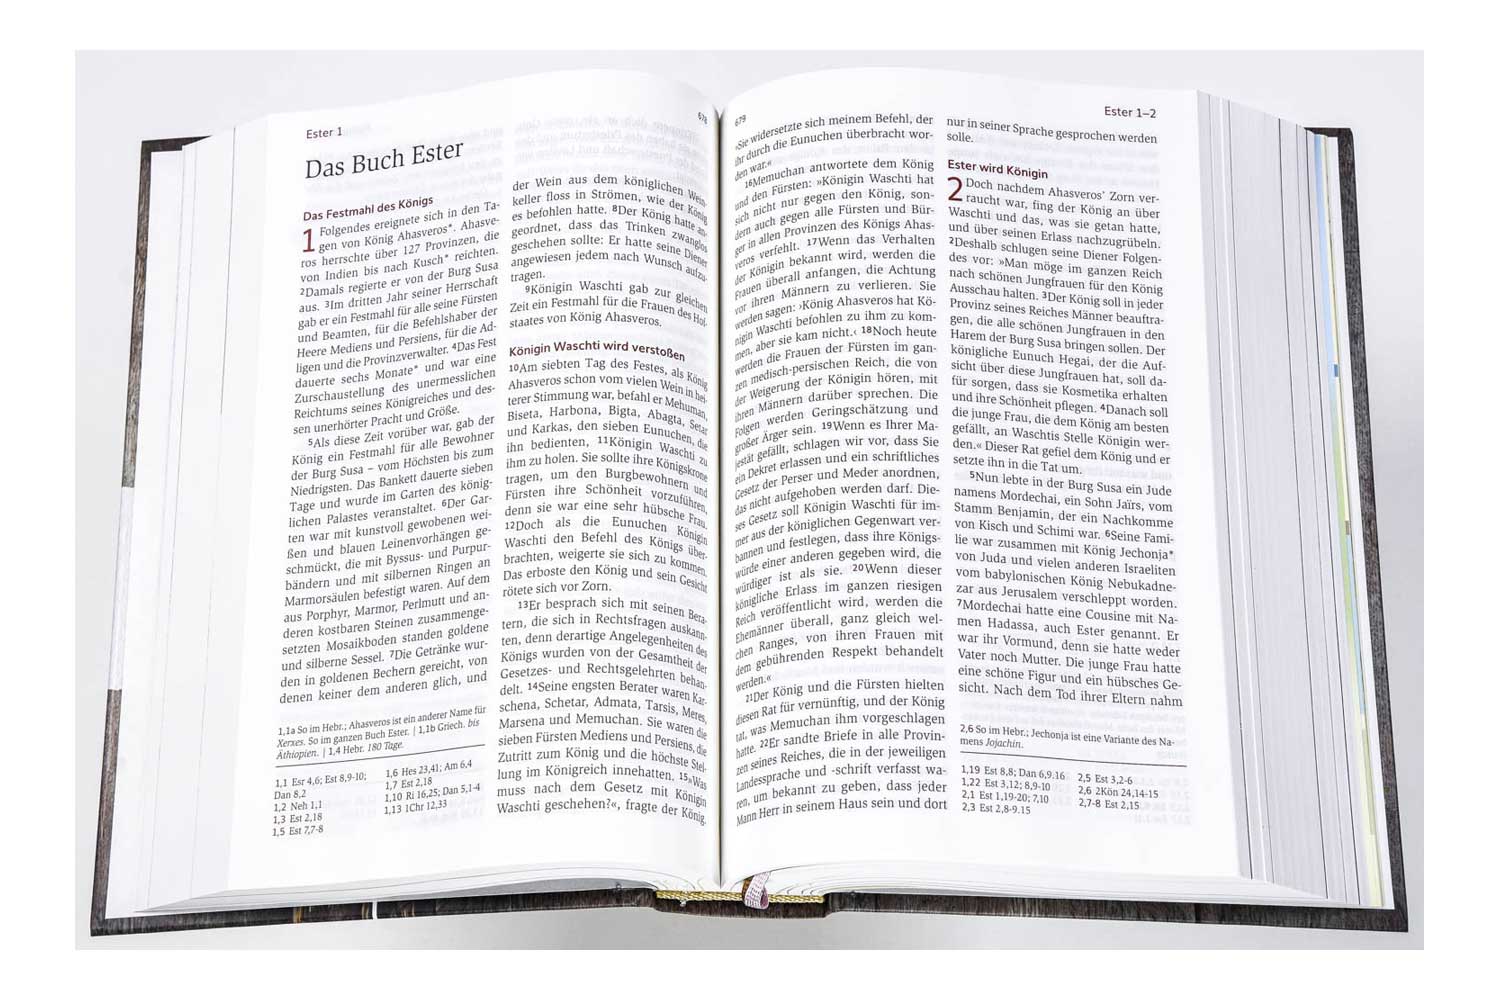 Neues Leben. Die Bibel - Standardausgabe "Blühende Worte"